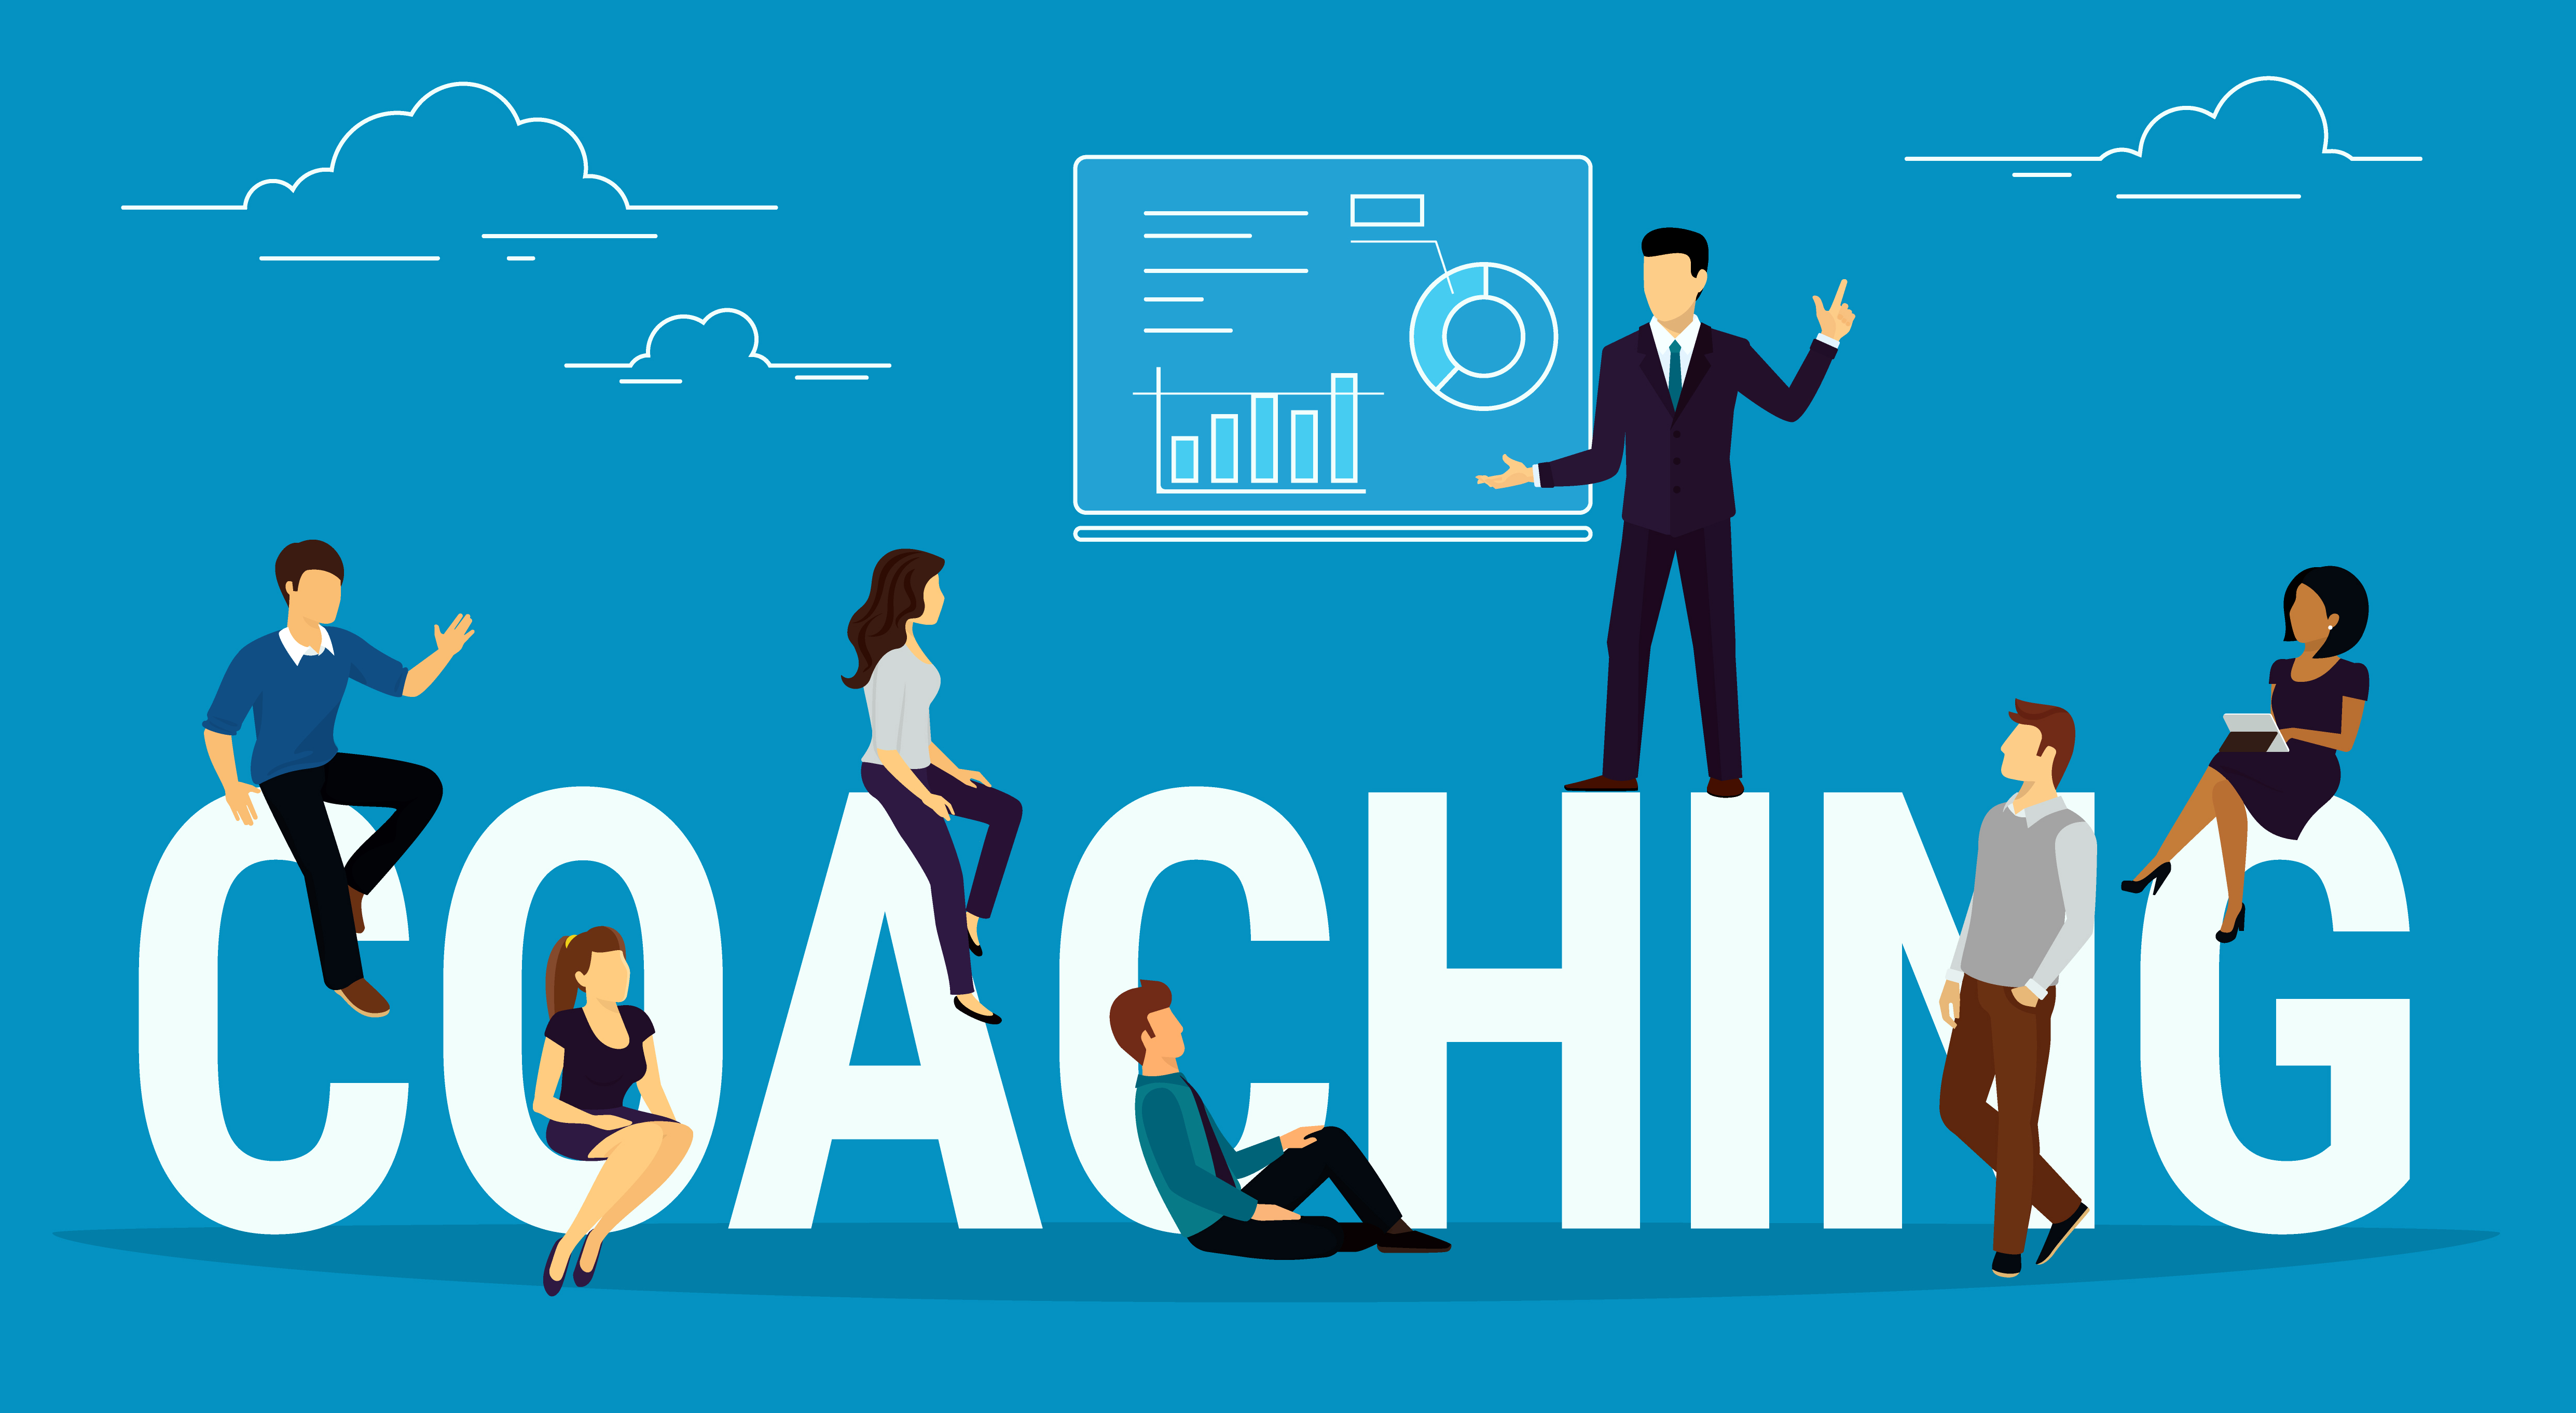 Coaching - Customer Service Culture